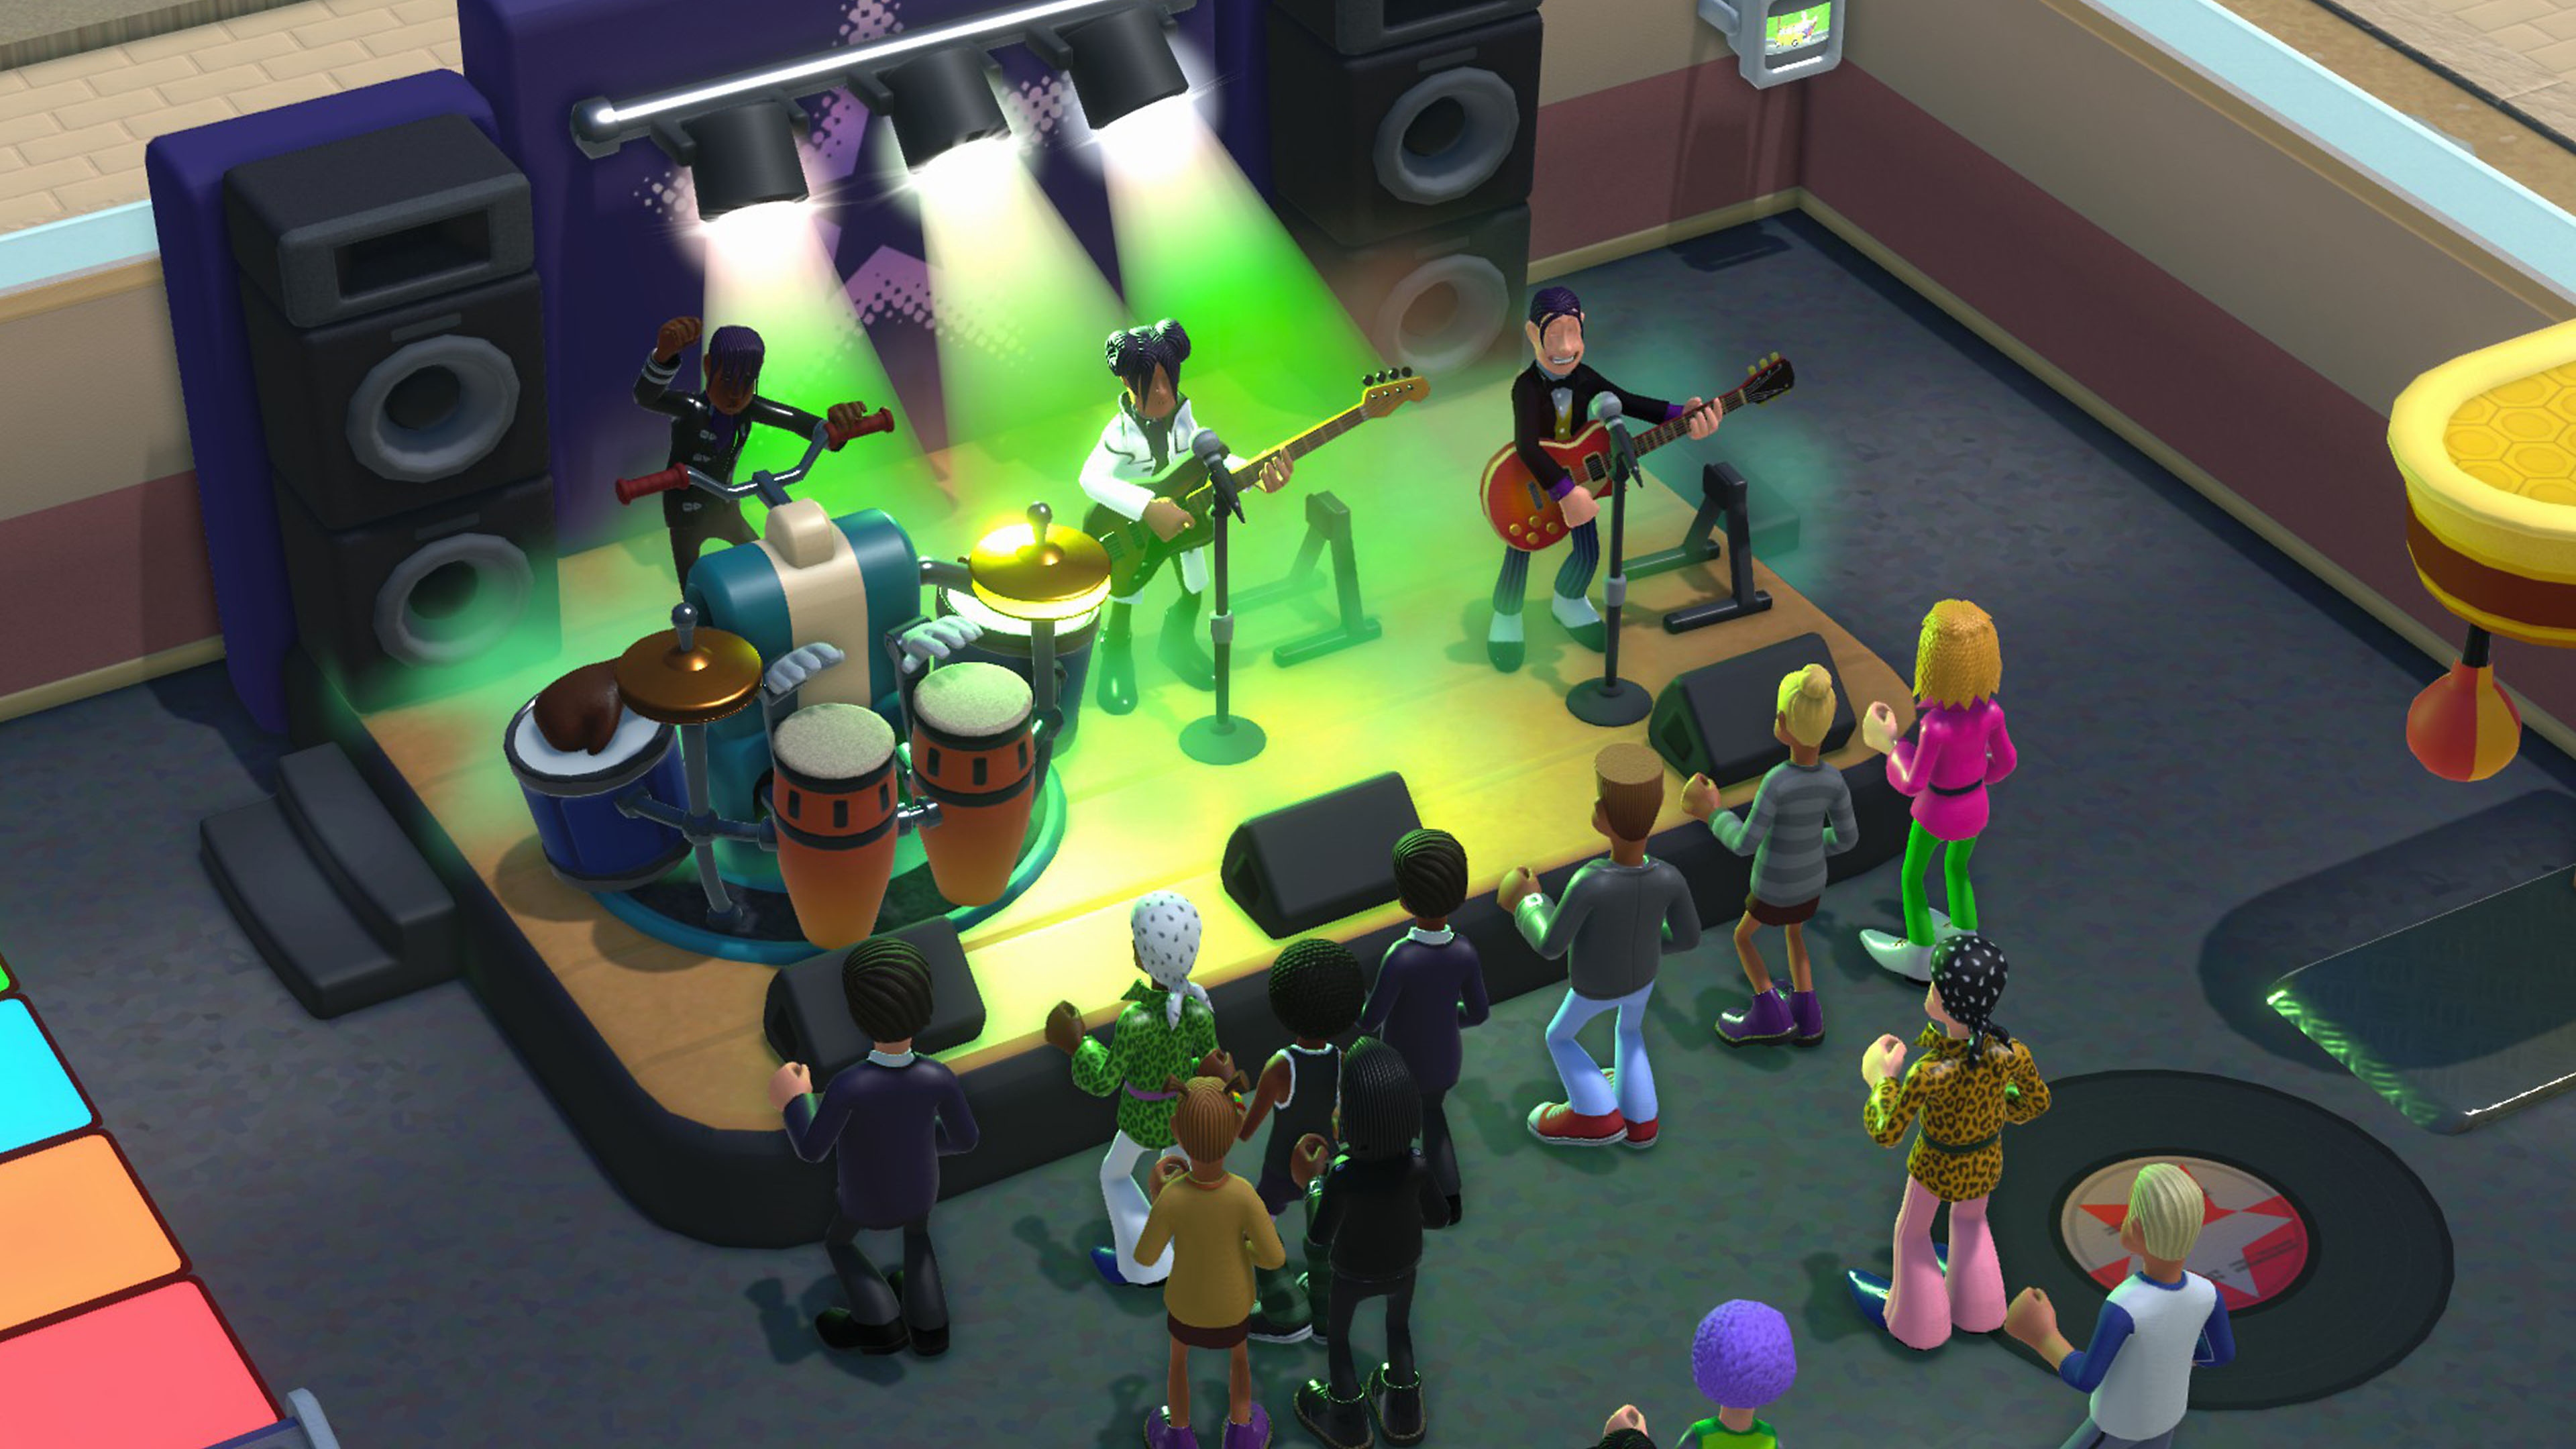 لقطة شاشة للعبة Two Point Campus بها فرقة موسيقية تعزف على المسرح